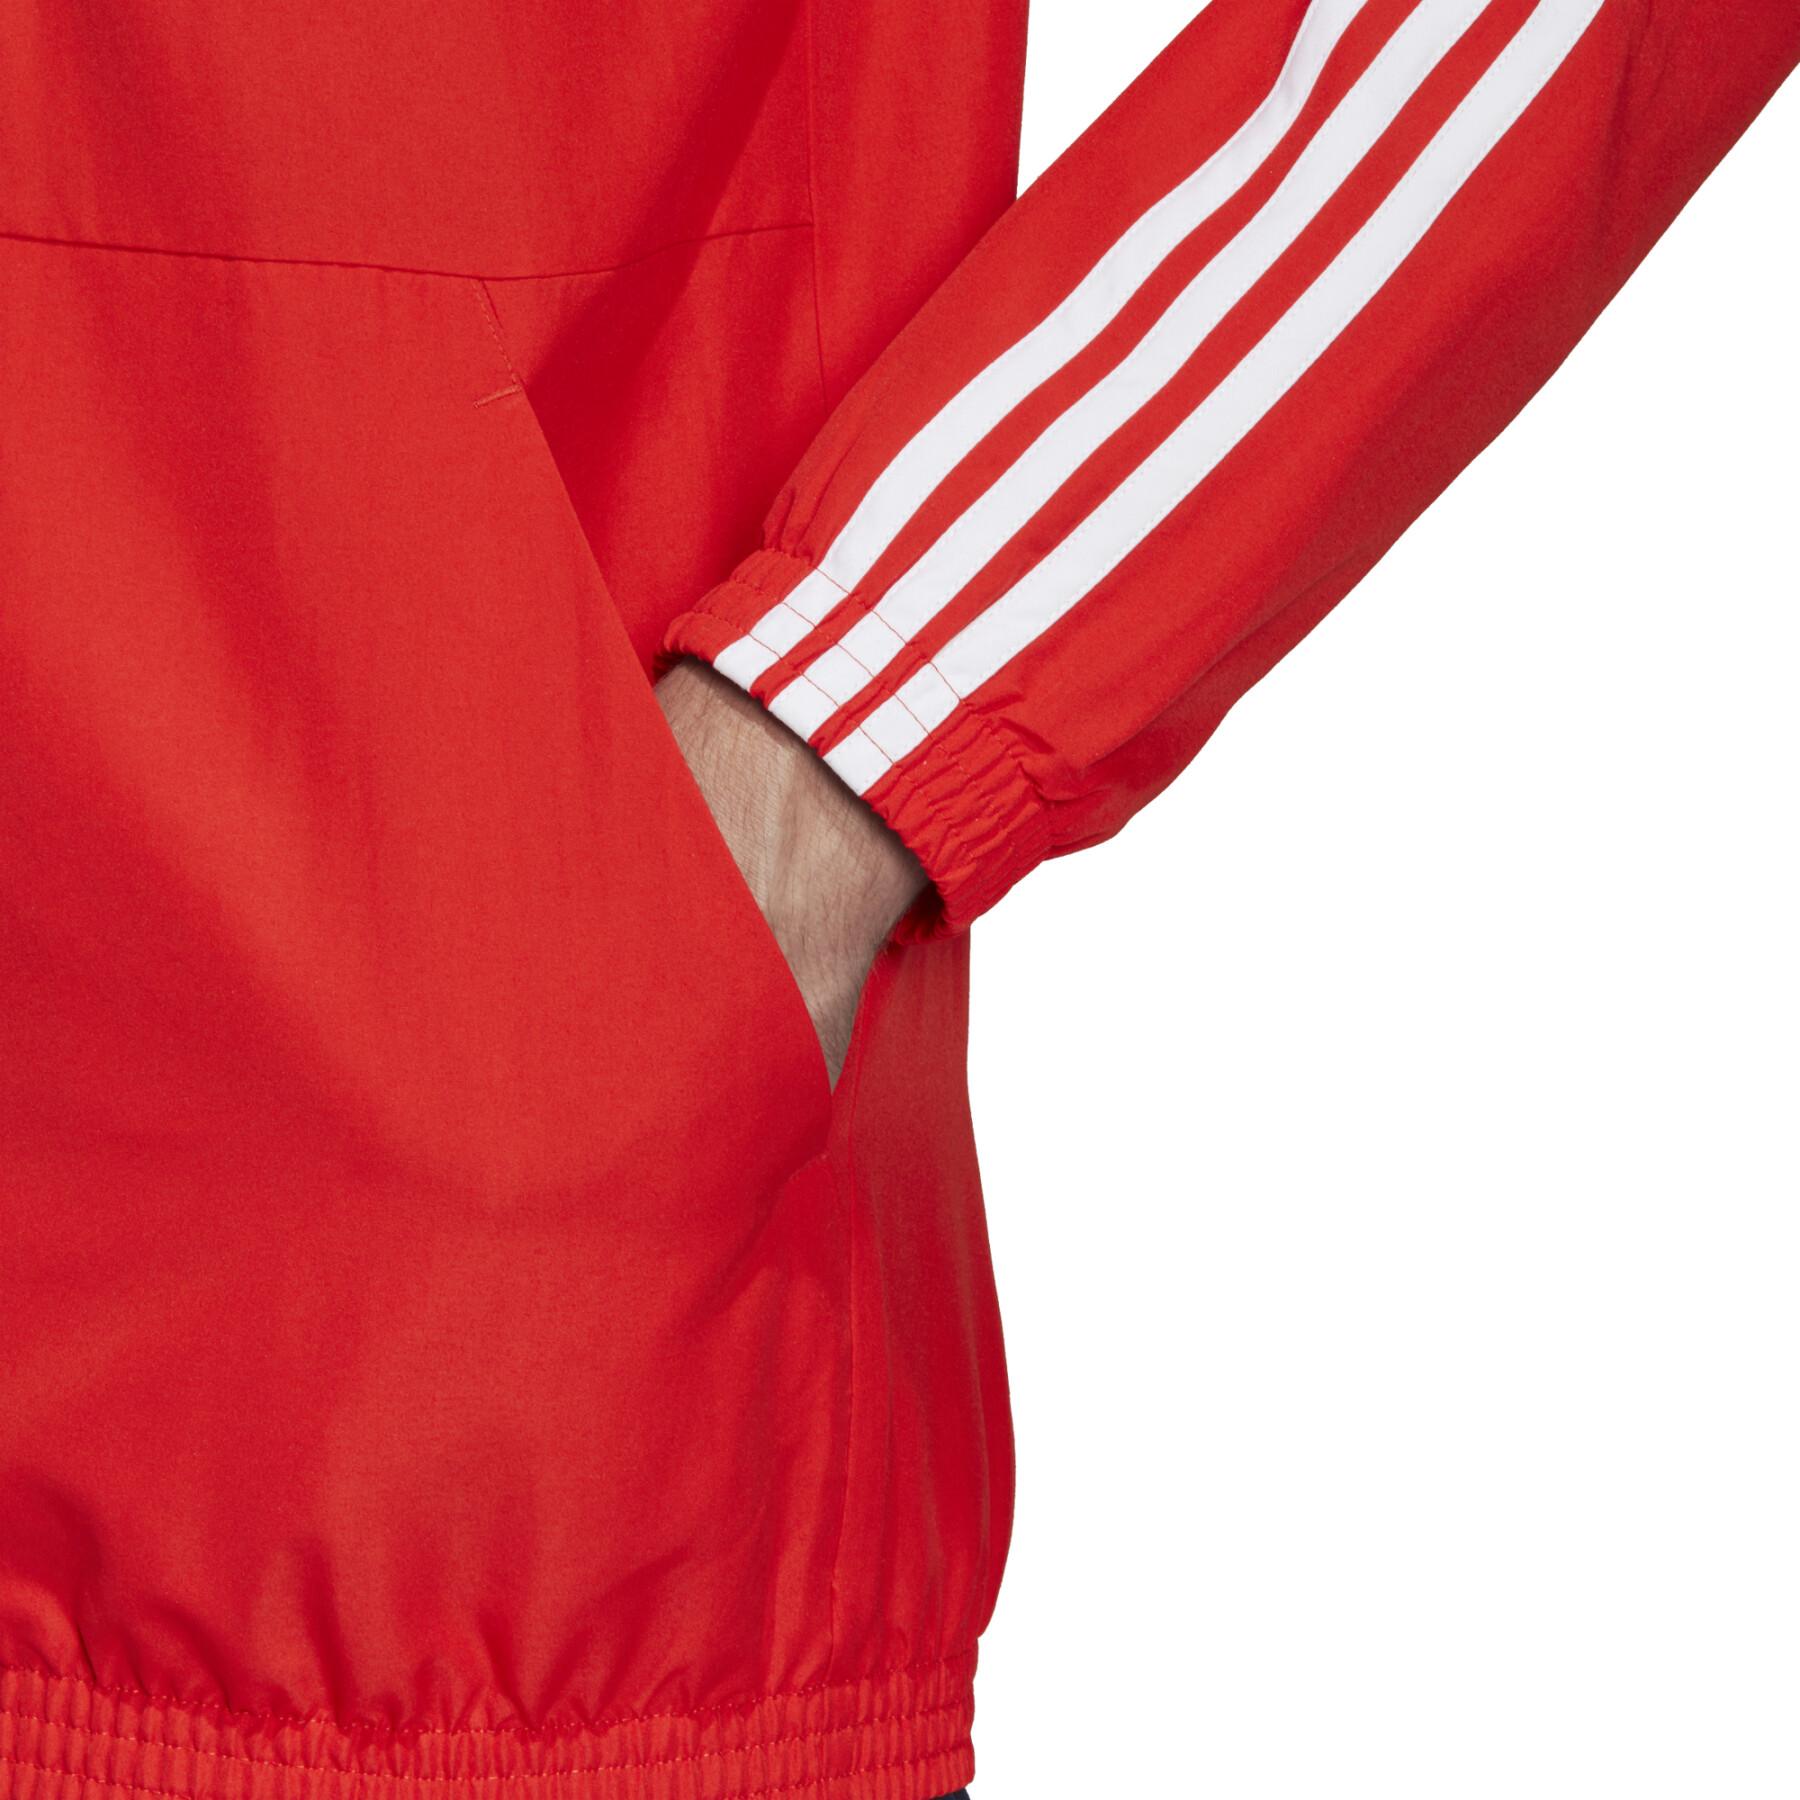 Trainingsanzug adidas 3-Stripes Woven Cuffed